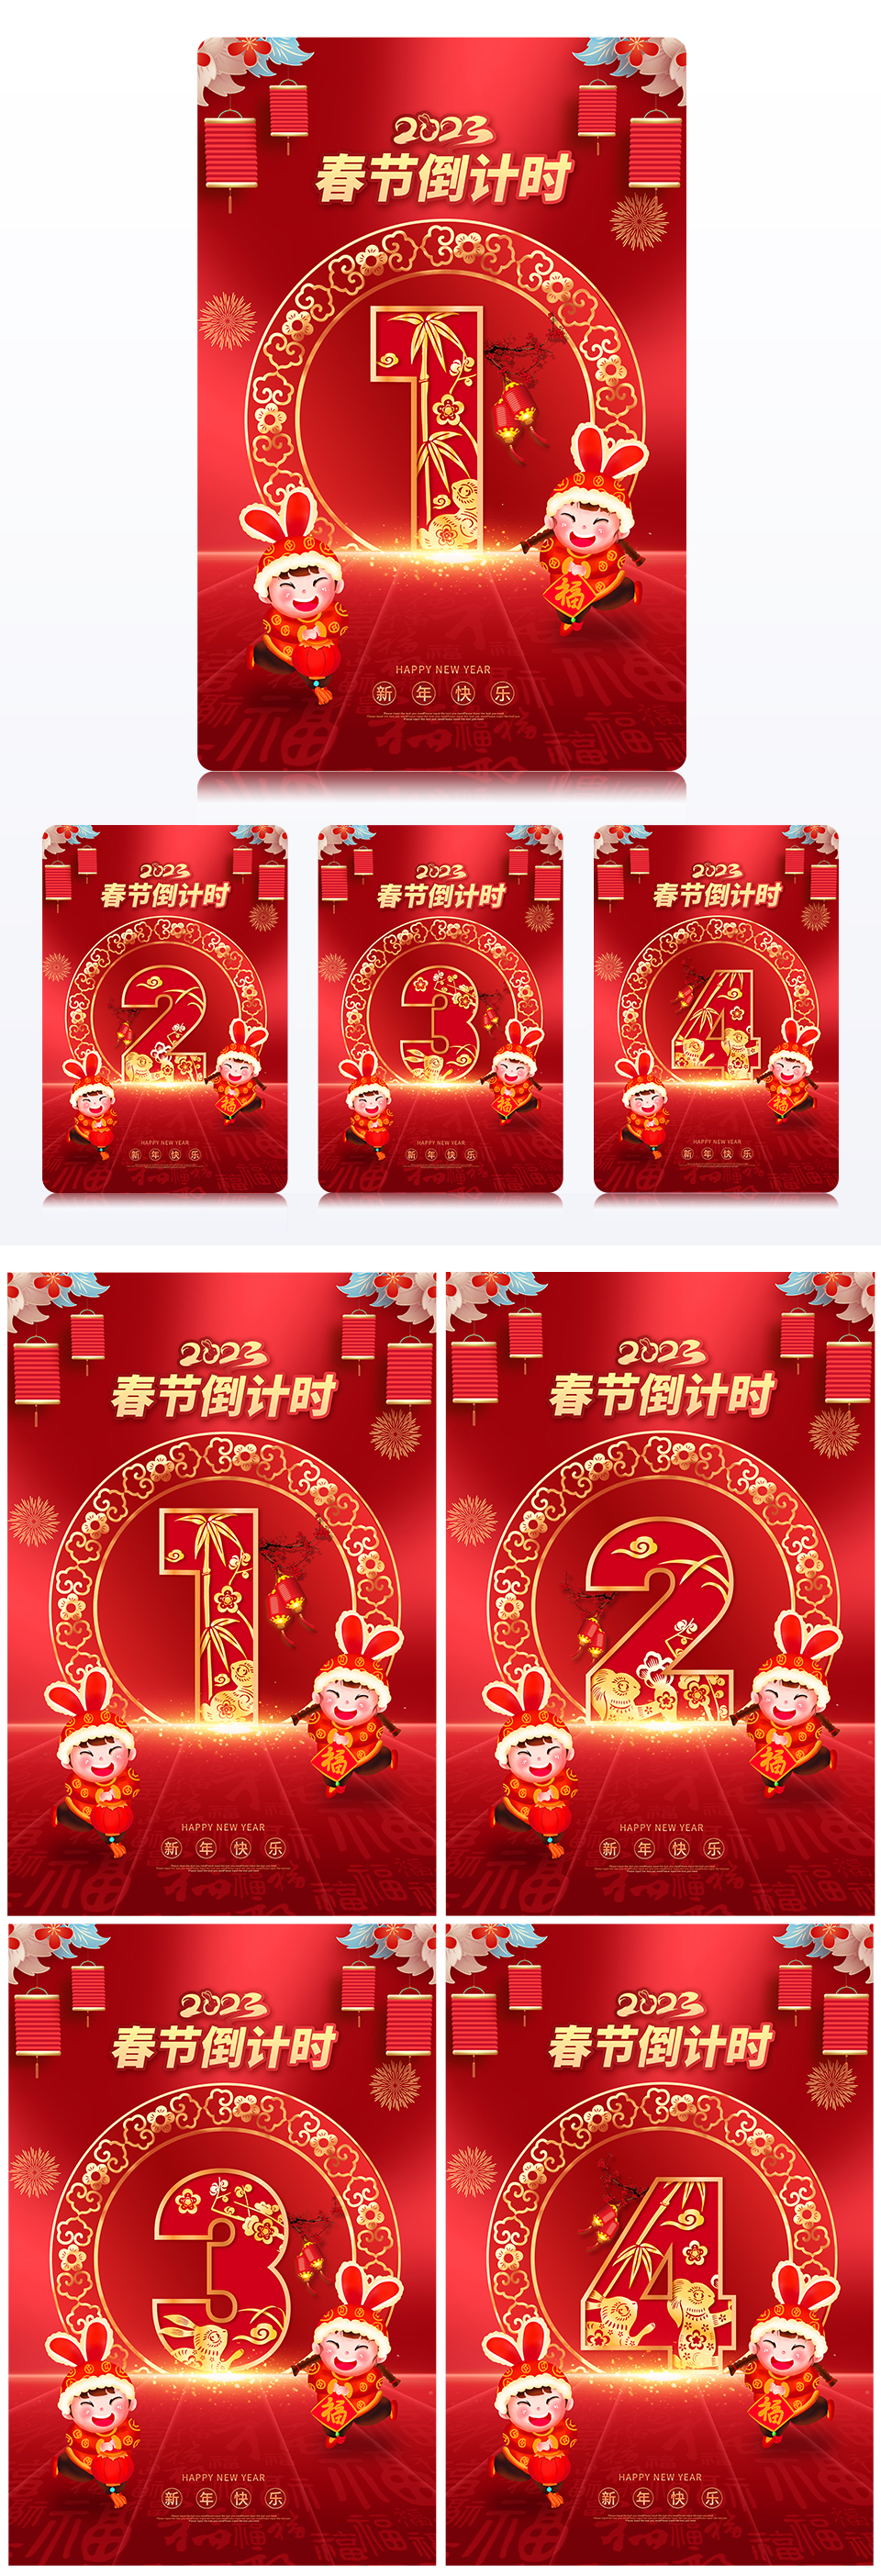 红色喜庆2023春节倒计时兔年组图海报